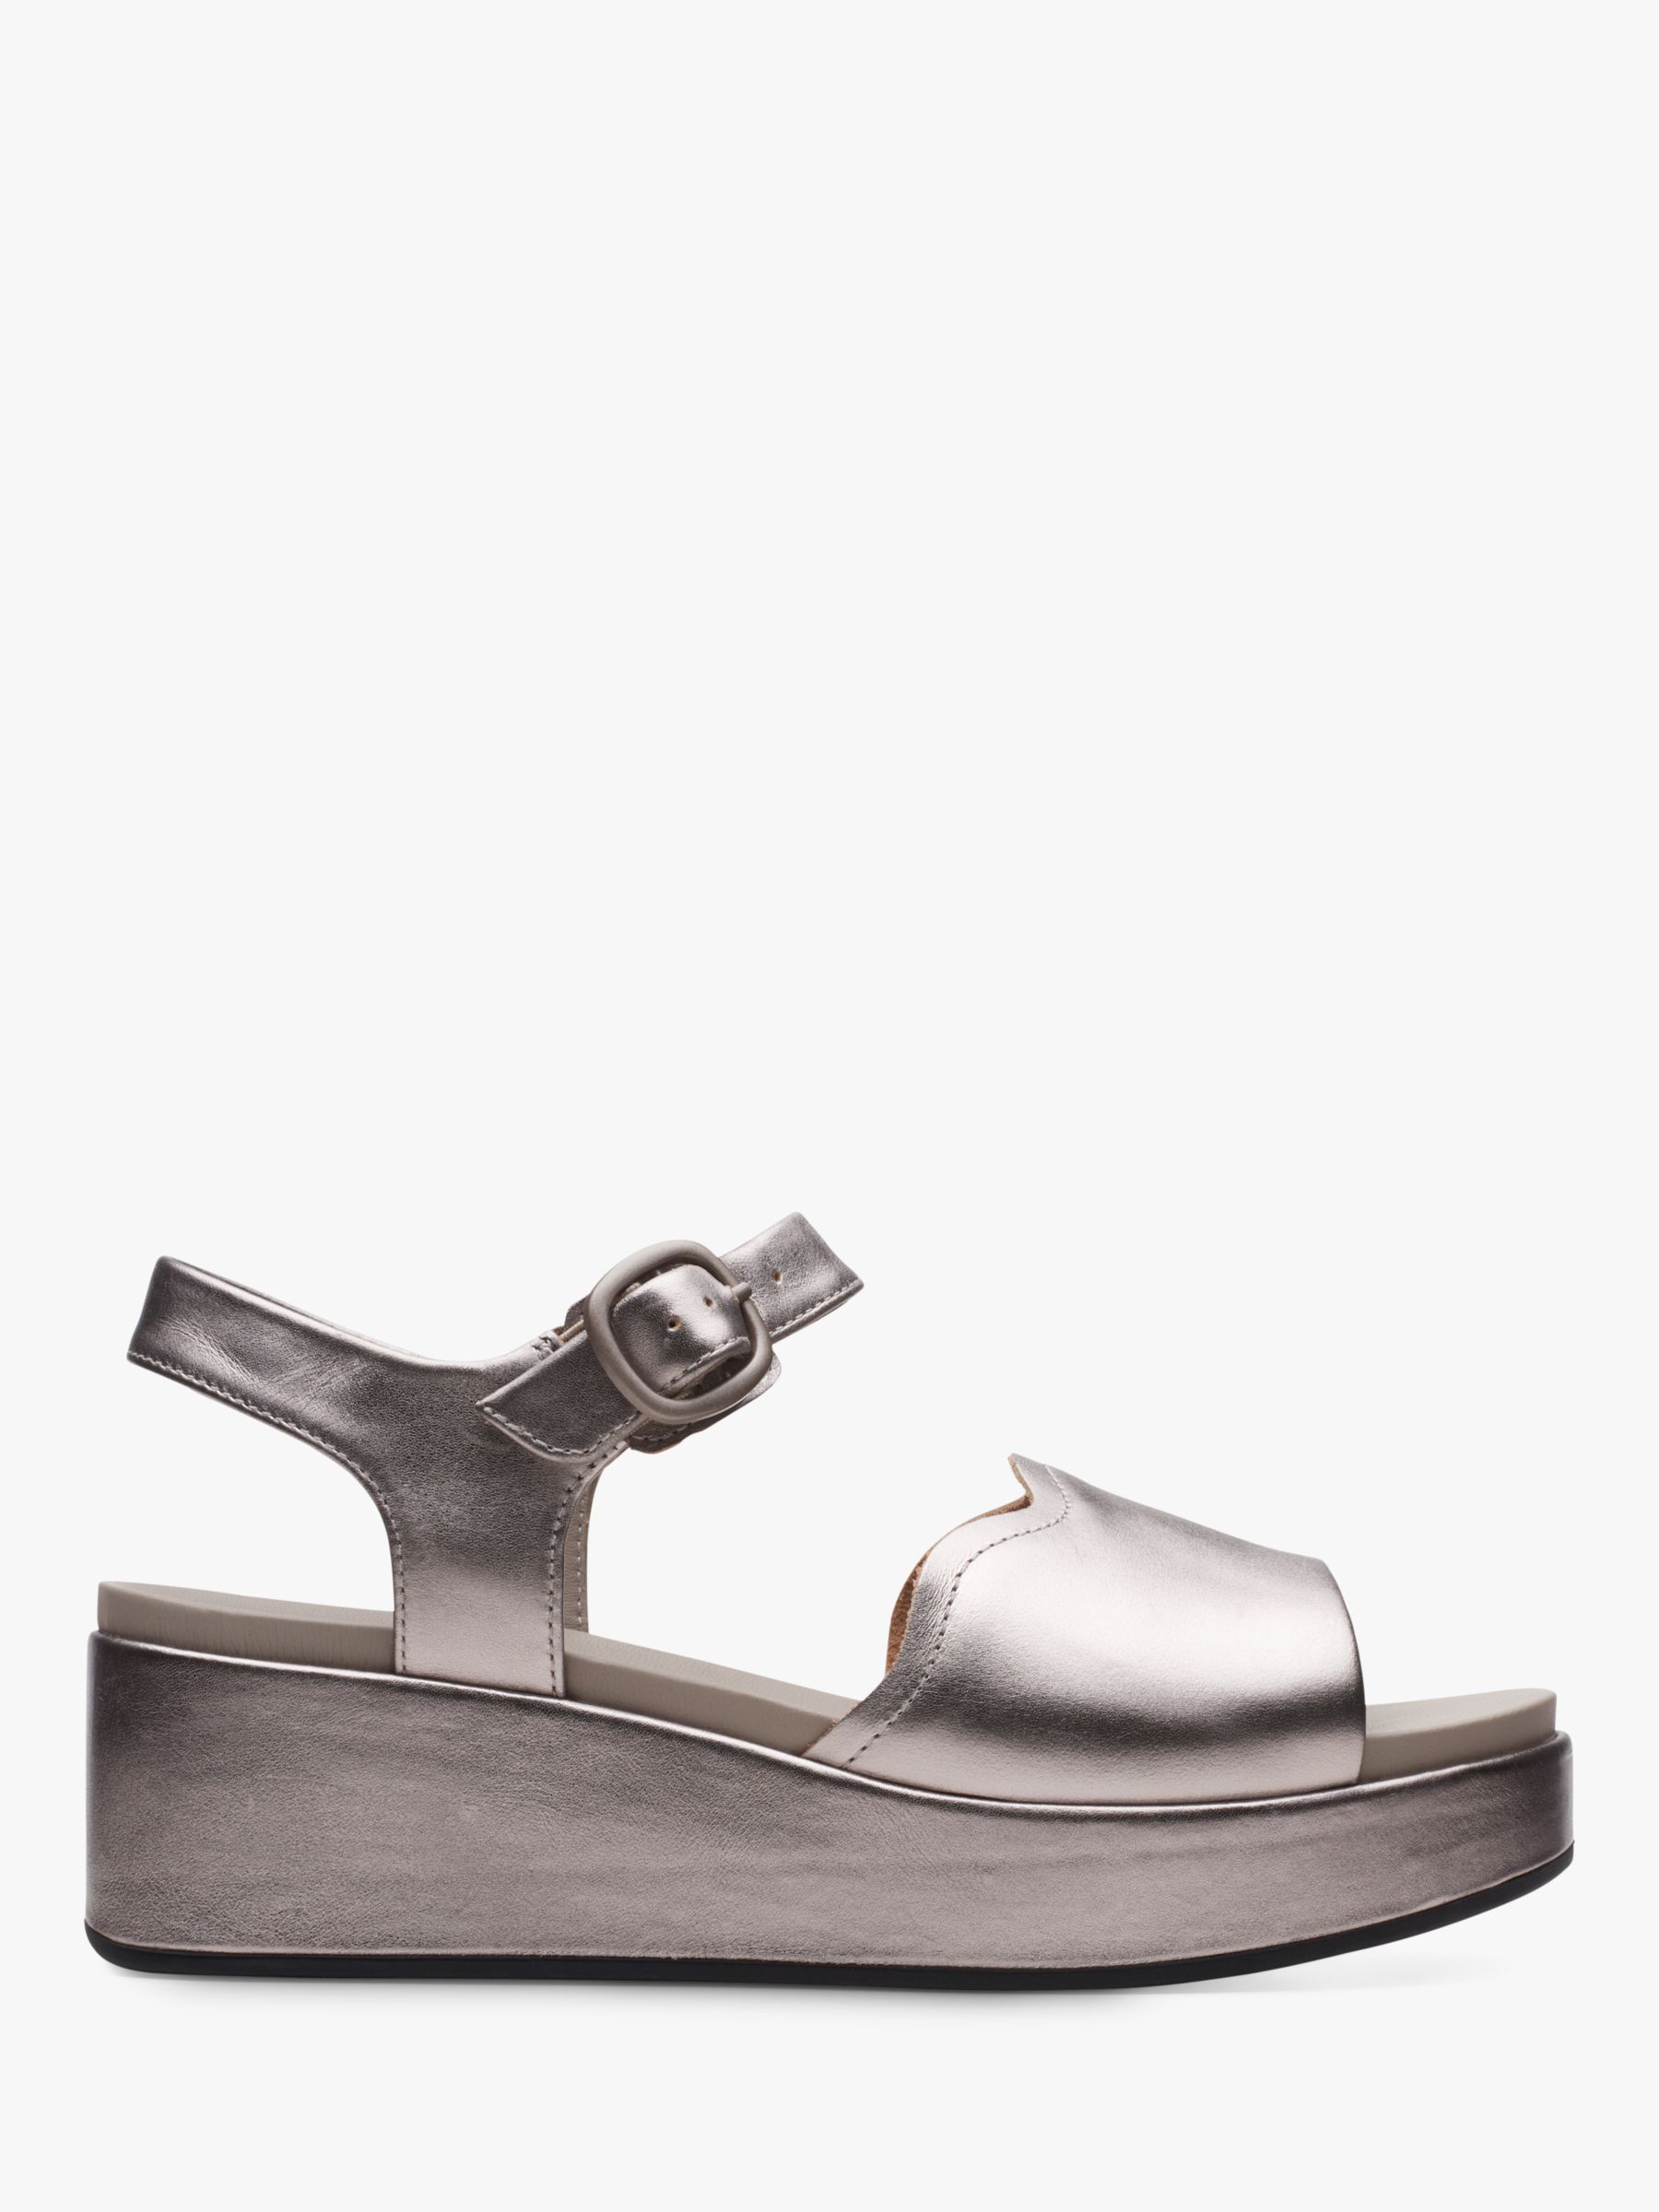 Clarks Kimmei Way Metallic Wedge Sandals, Pewter at John Lewis & Partners